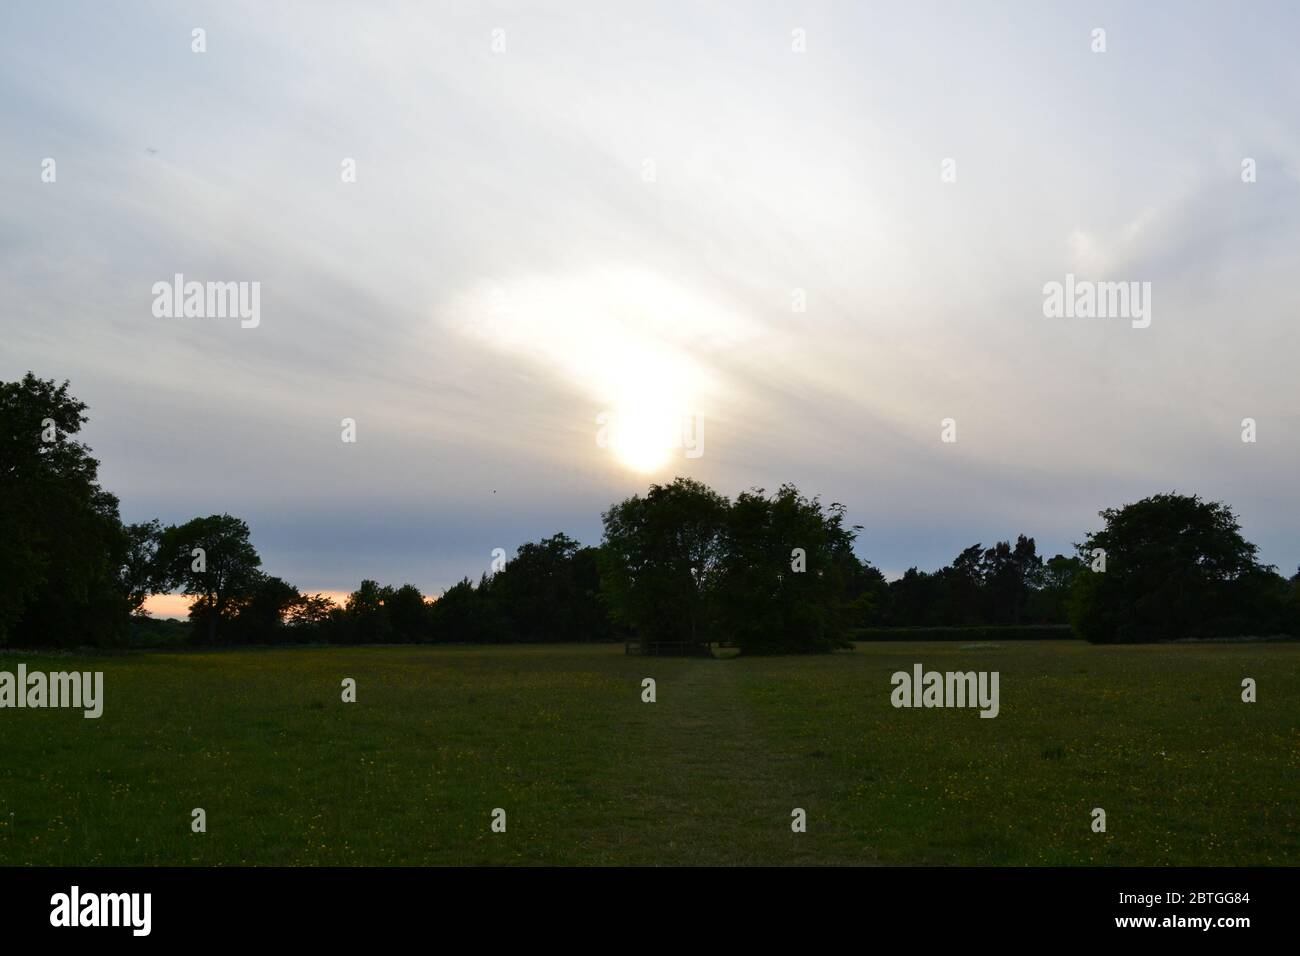 Ende Mai im Nordwesten von Kent, England. Felder in Charles Darwins Dorf, Downe, in der Dämmerung. Sonnenuntergang, dünne Wolke, friedliche, ruhige Landszene Stockfoto